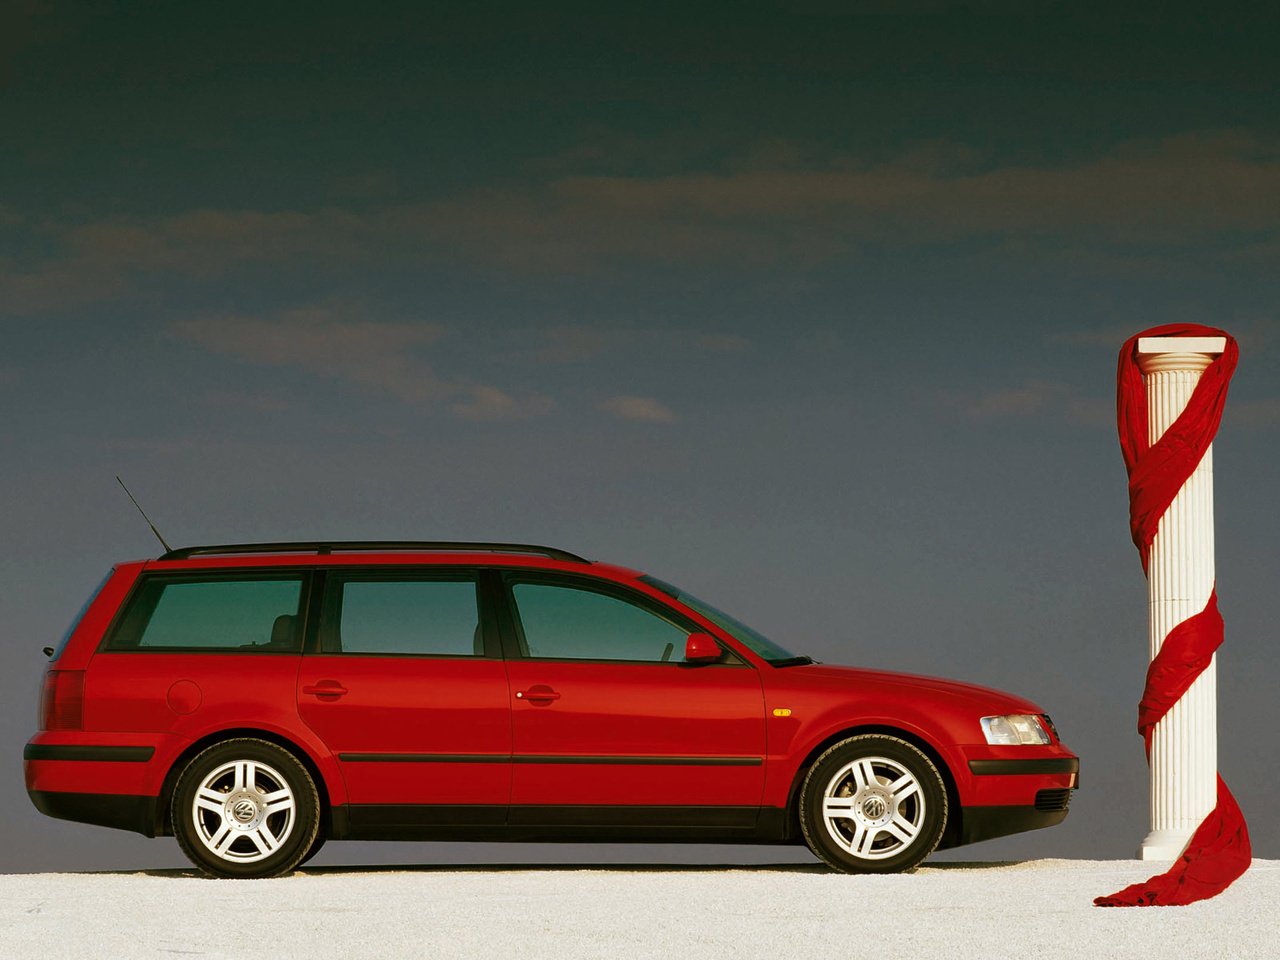 Пассат б5 1.8 универсал. Volkswagen Passat b5 универсал. Volkswagen Passat b5 variant. Volkswagen Passat b5 1997 универсал. Фольксваген Пассат b5 универсал.